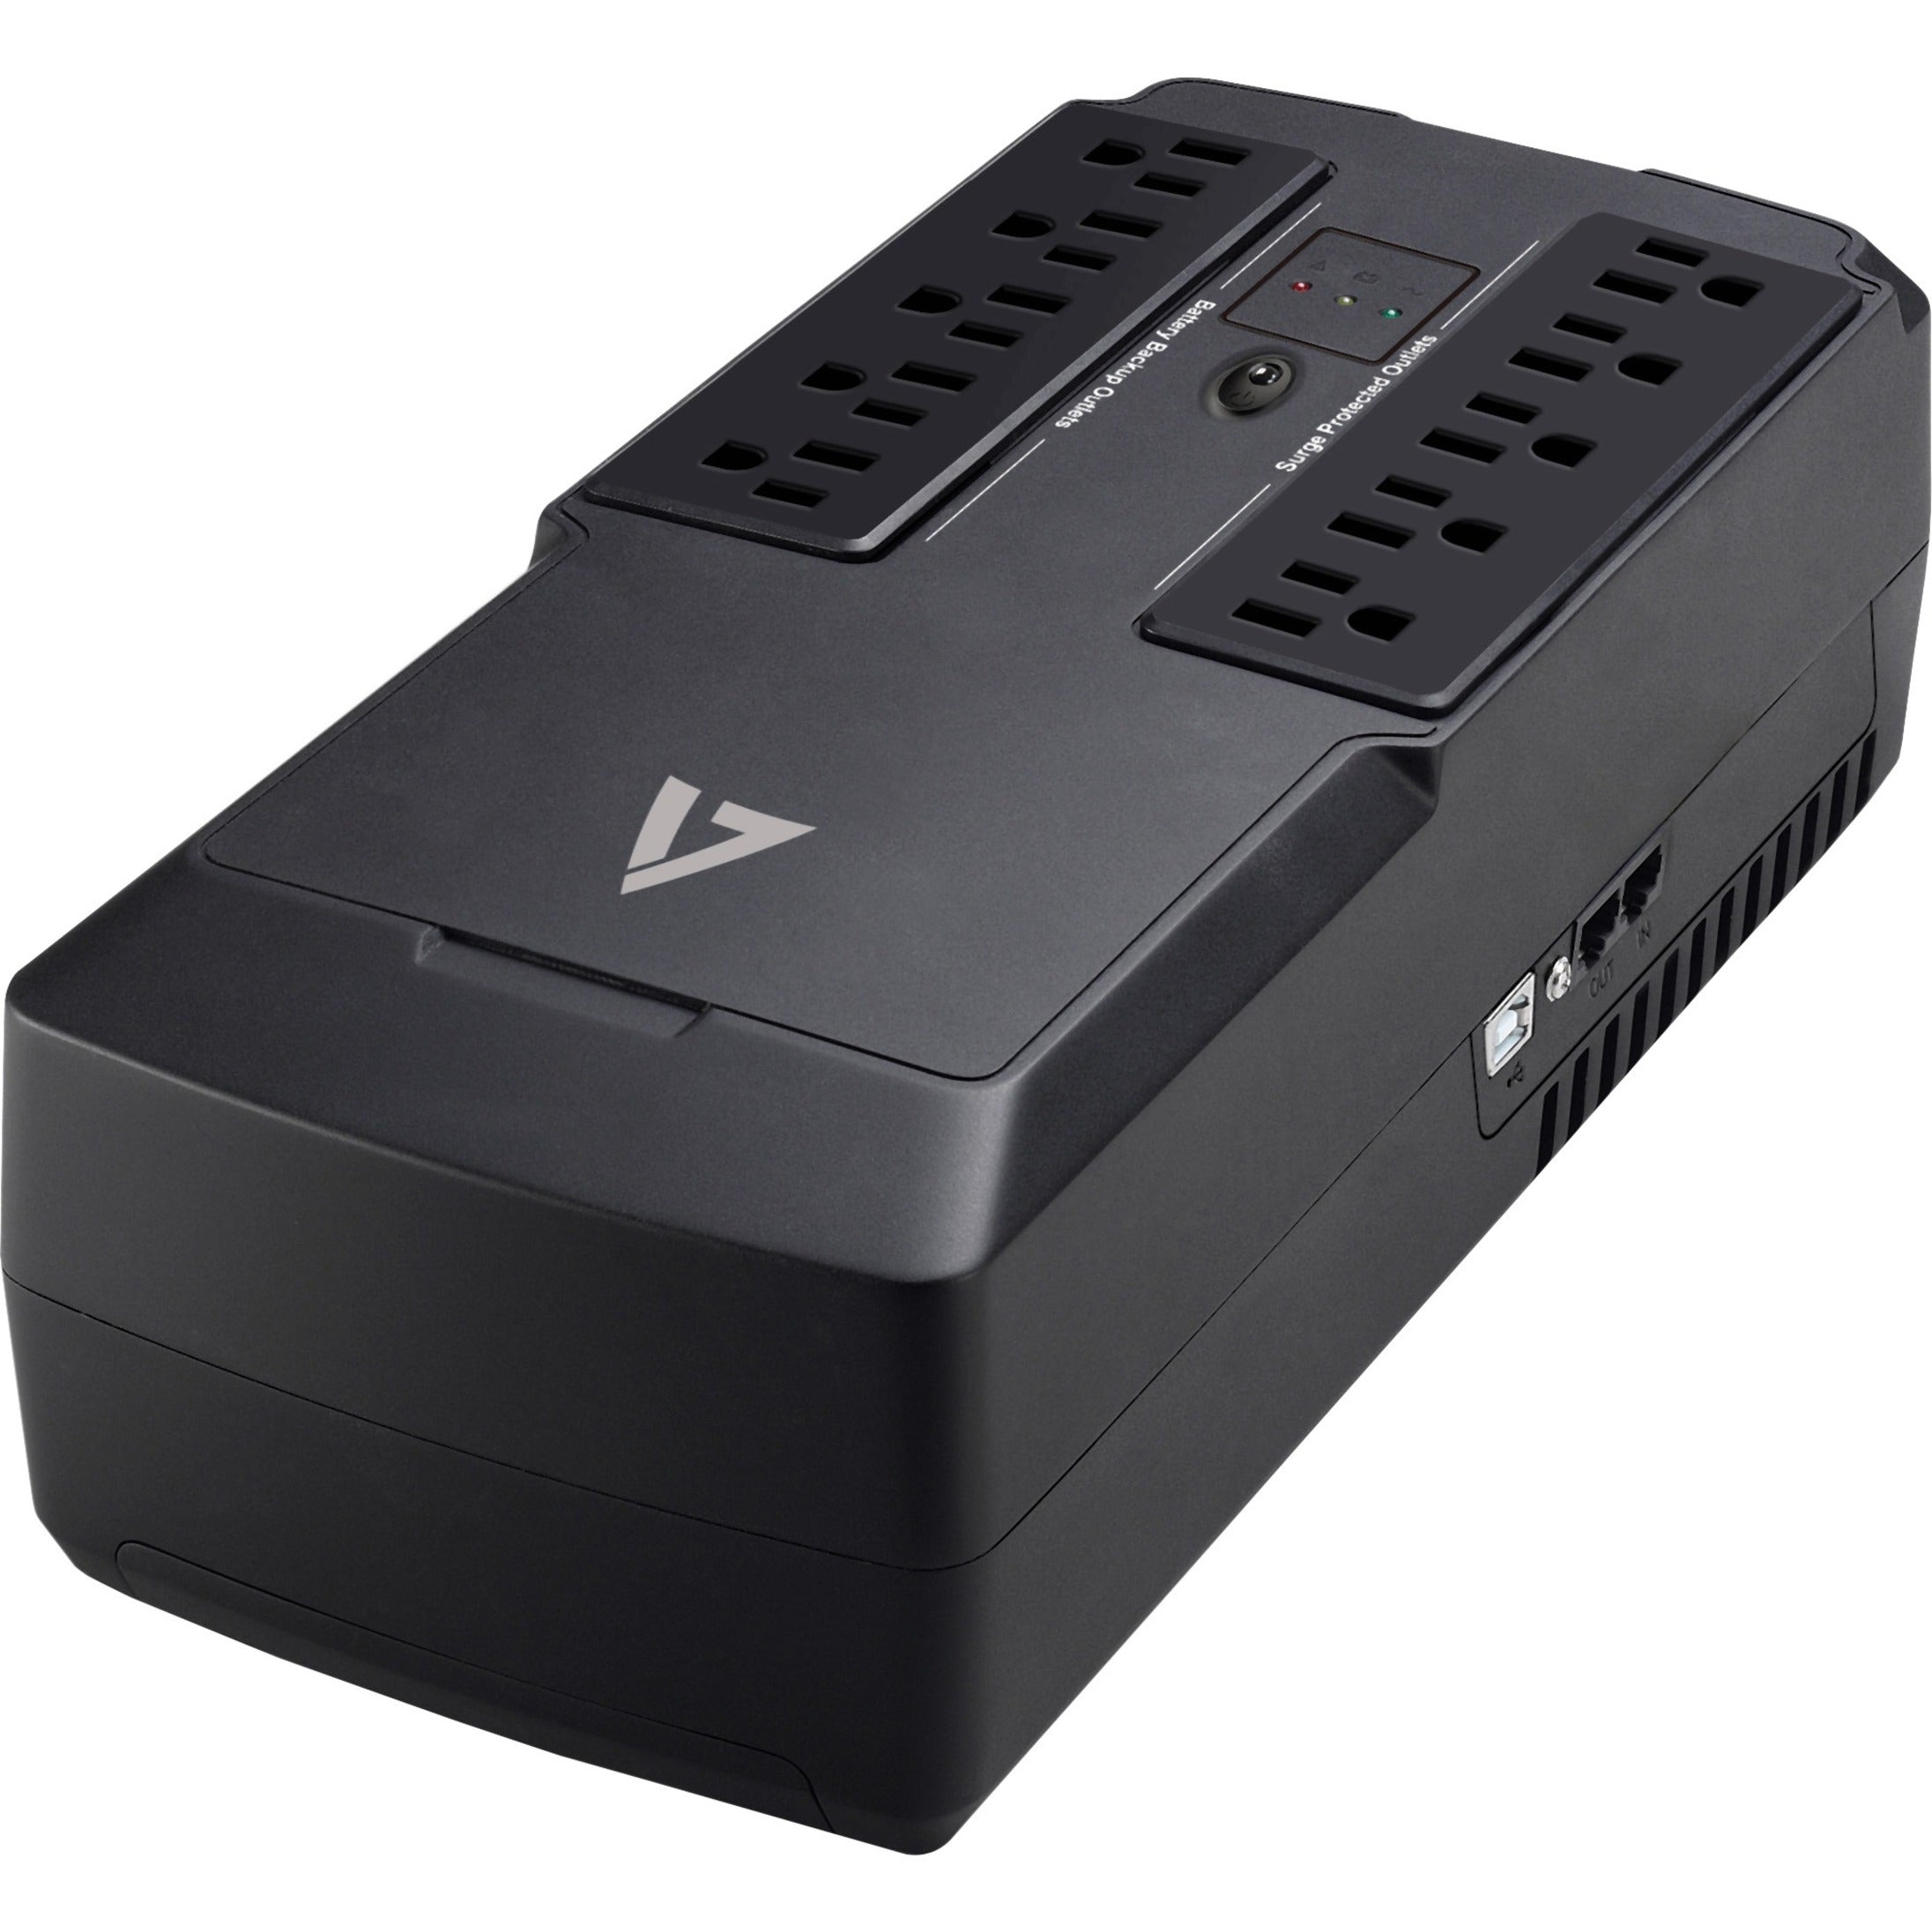 V7 UPS1DT550-1N UPS 550VA Desktop with 10 Outlets, 3 Year Limited Warranty, Energy Star, USB, 120V AC